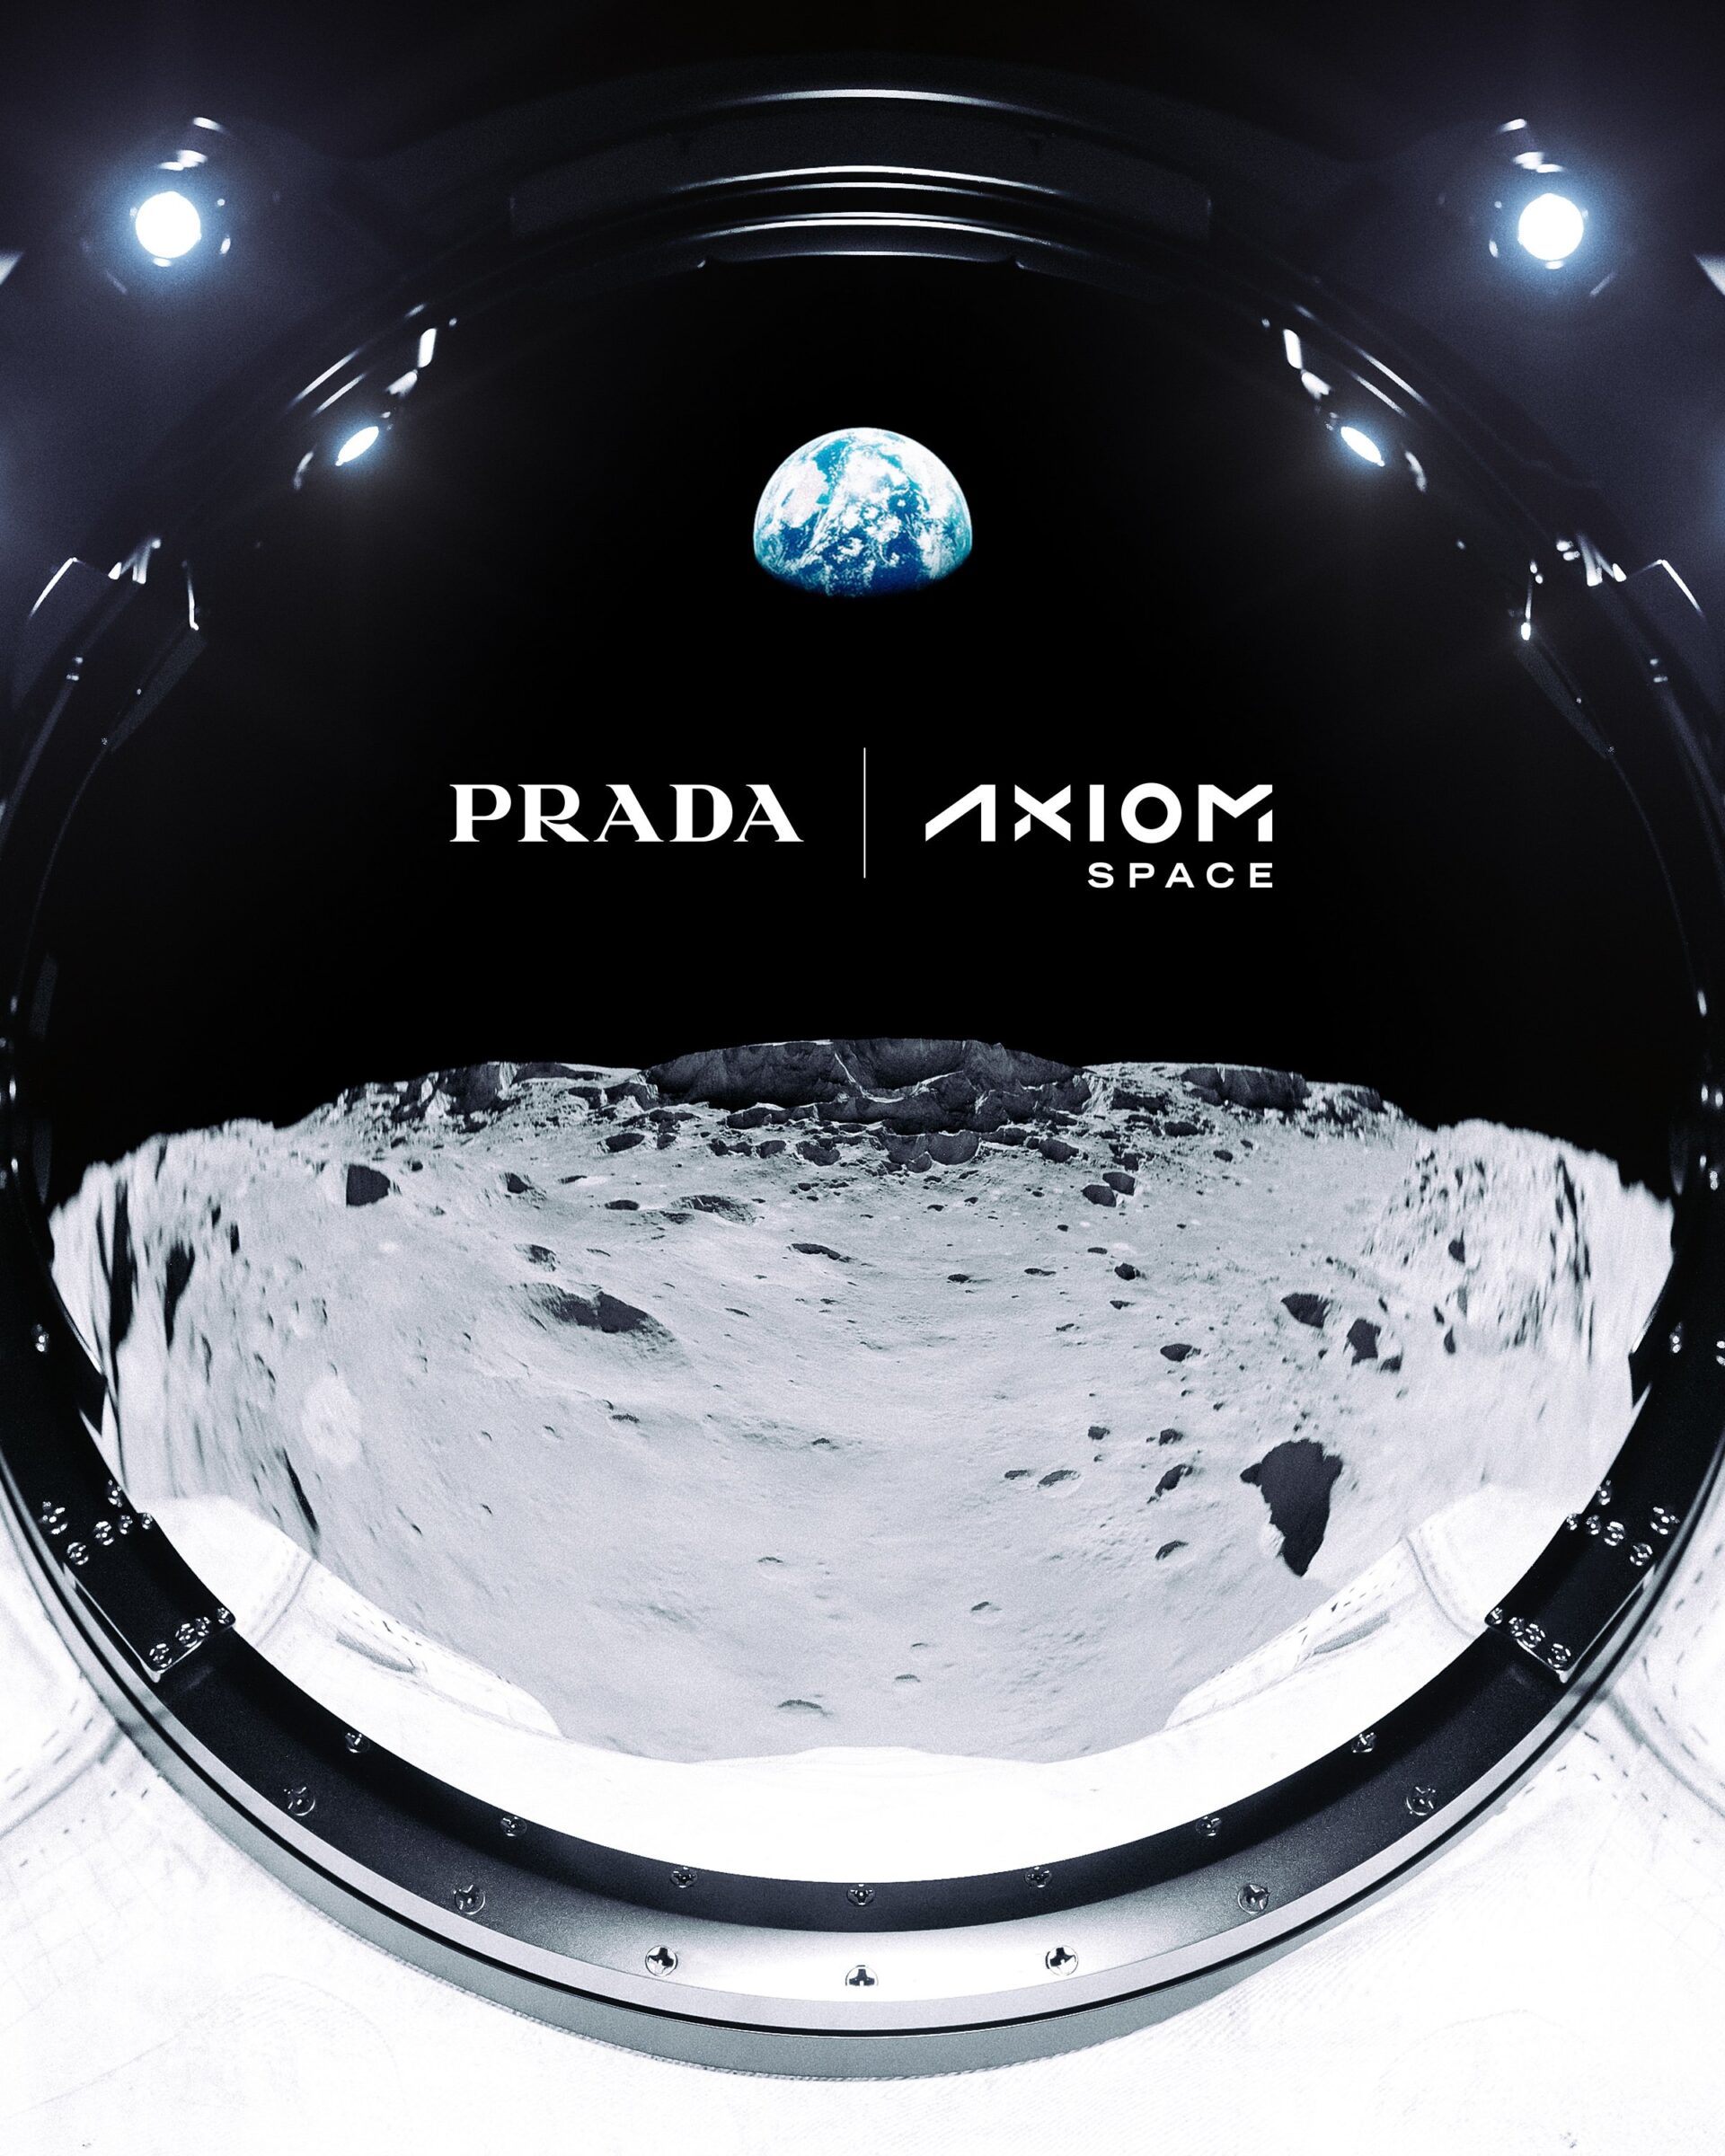 Prada AXIOM Space Suit